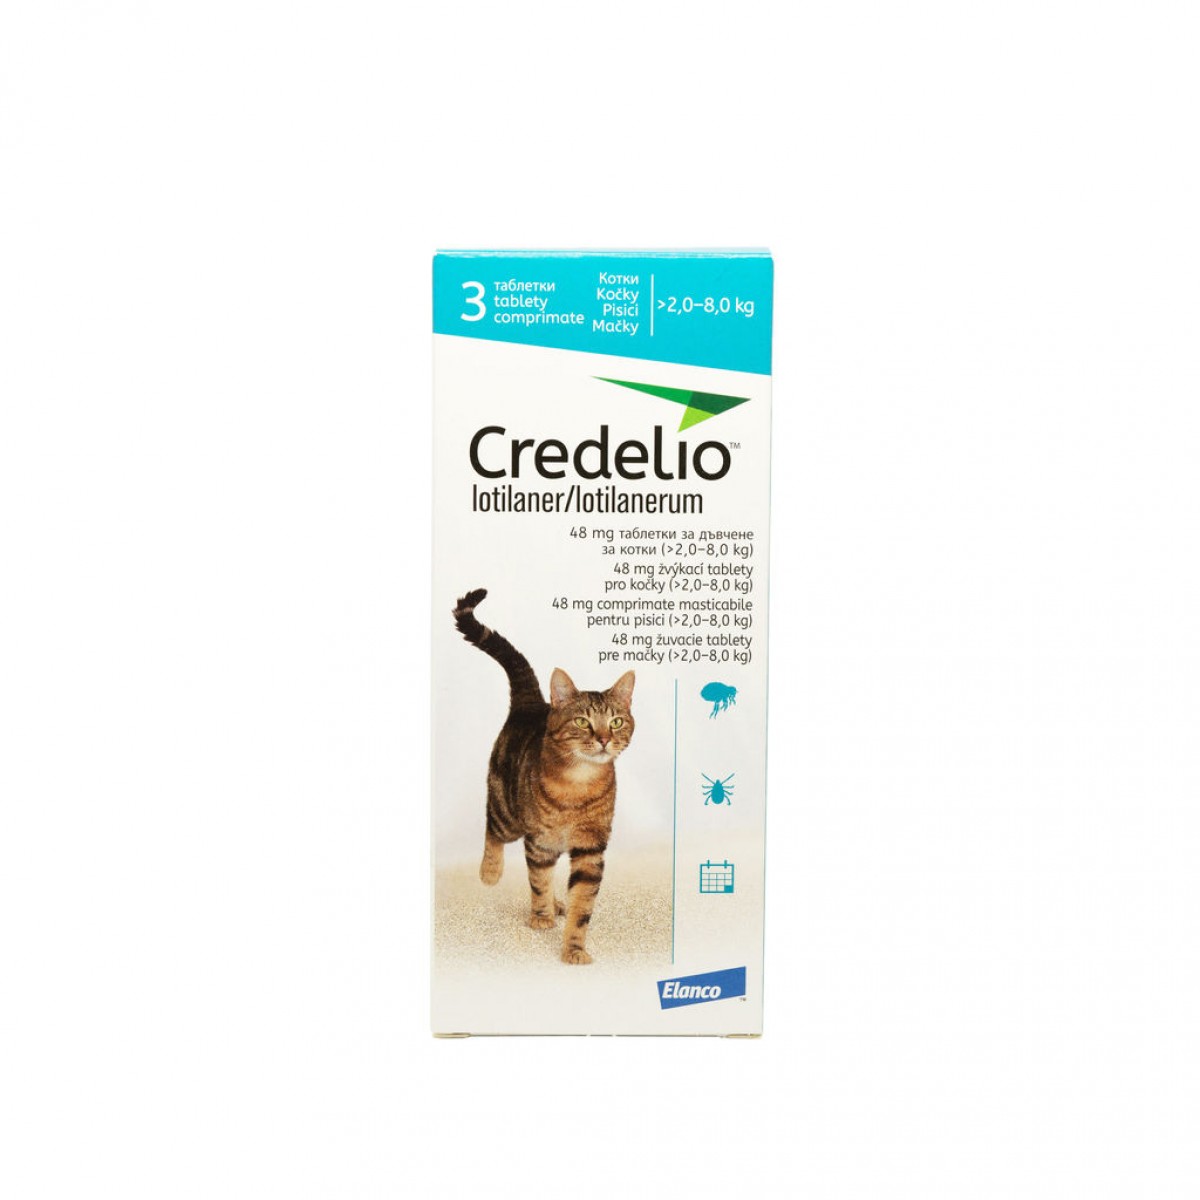 Tabletă antiparazitară Credelio 48mg  pentru pisici intre 2-8 kg, Antiparazitare externe, Antiparazitare, Pisici 